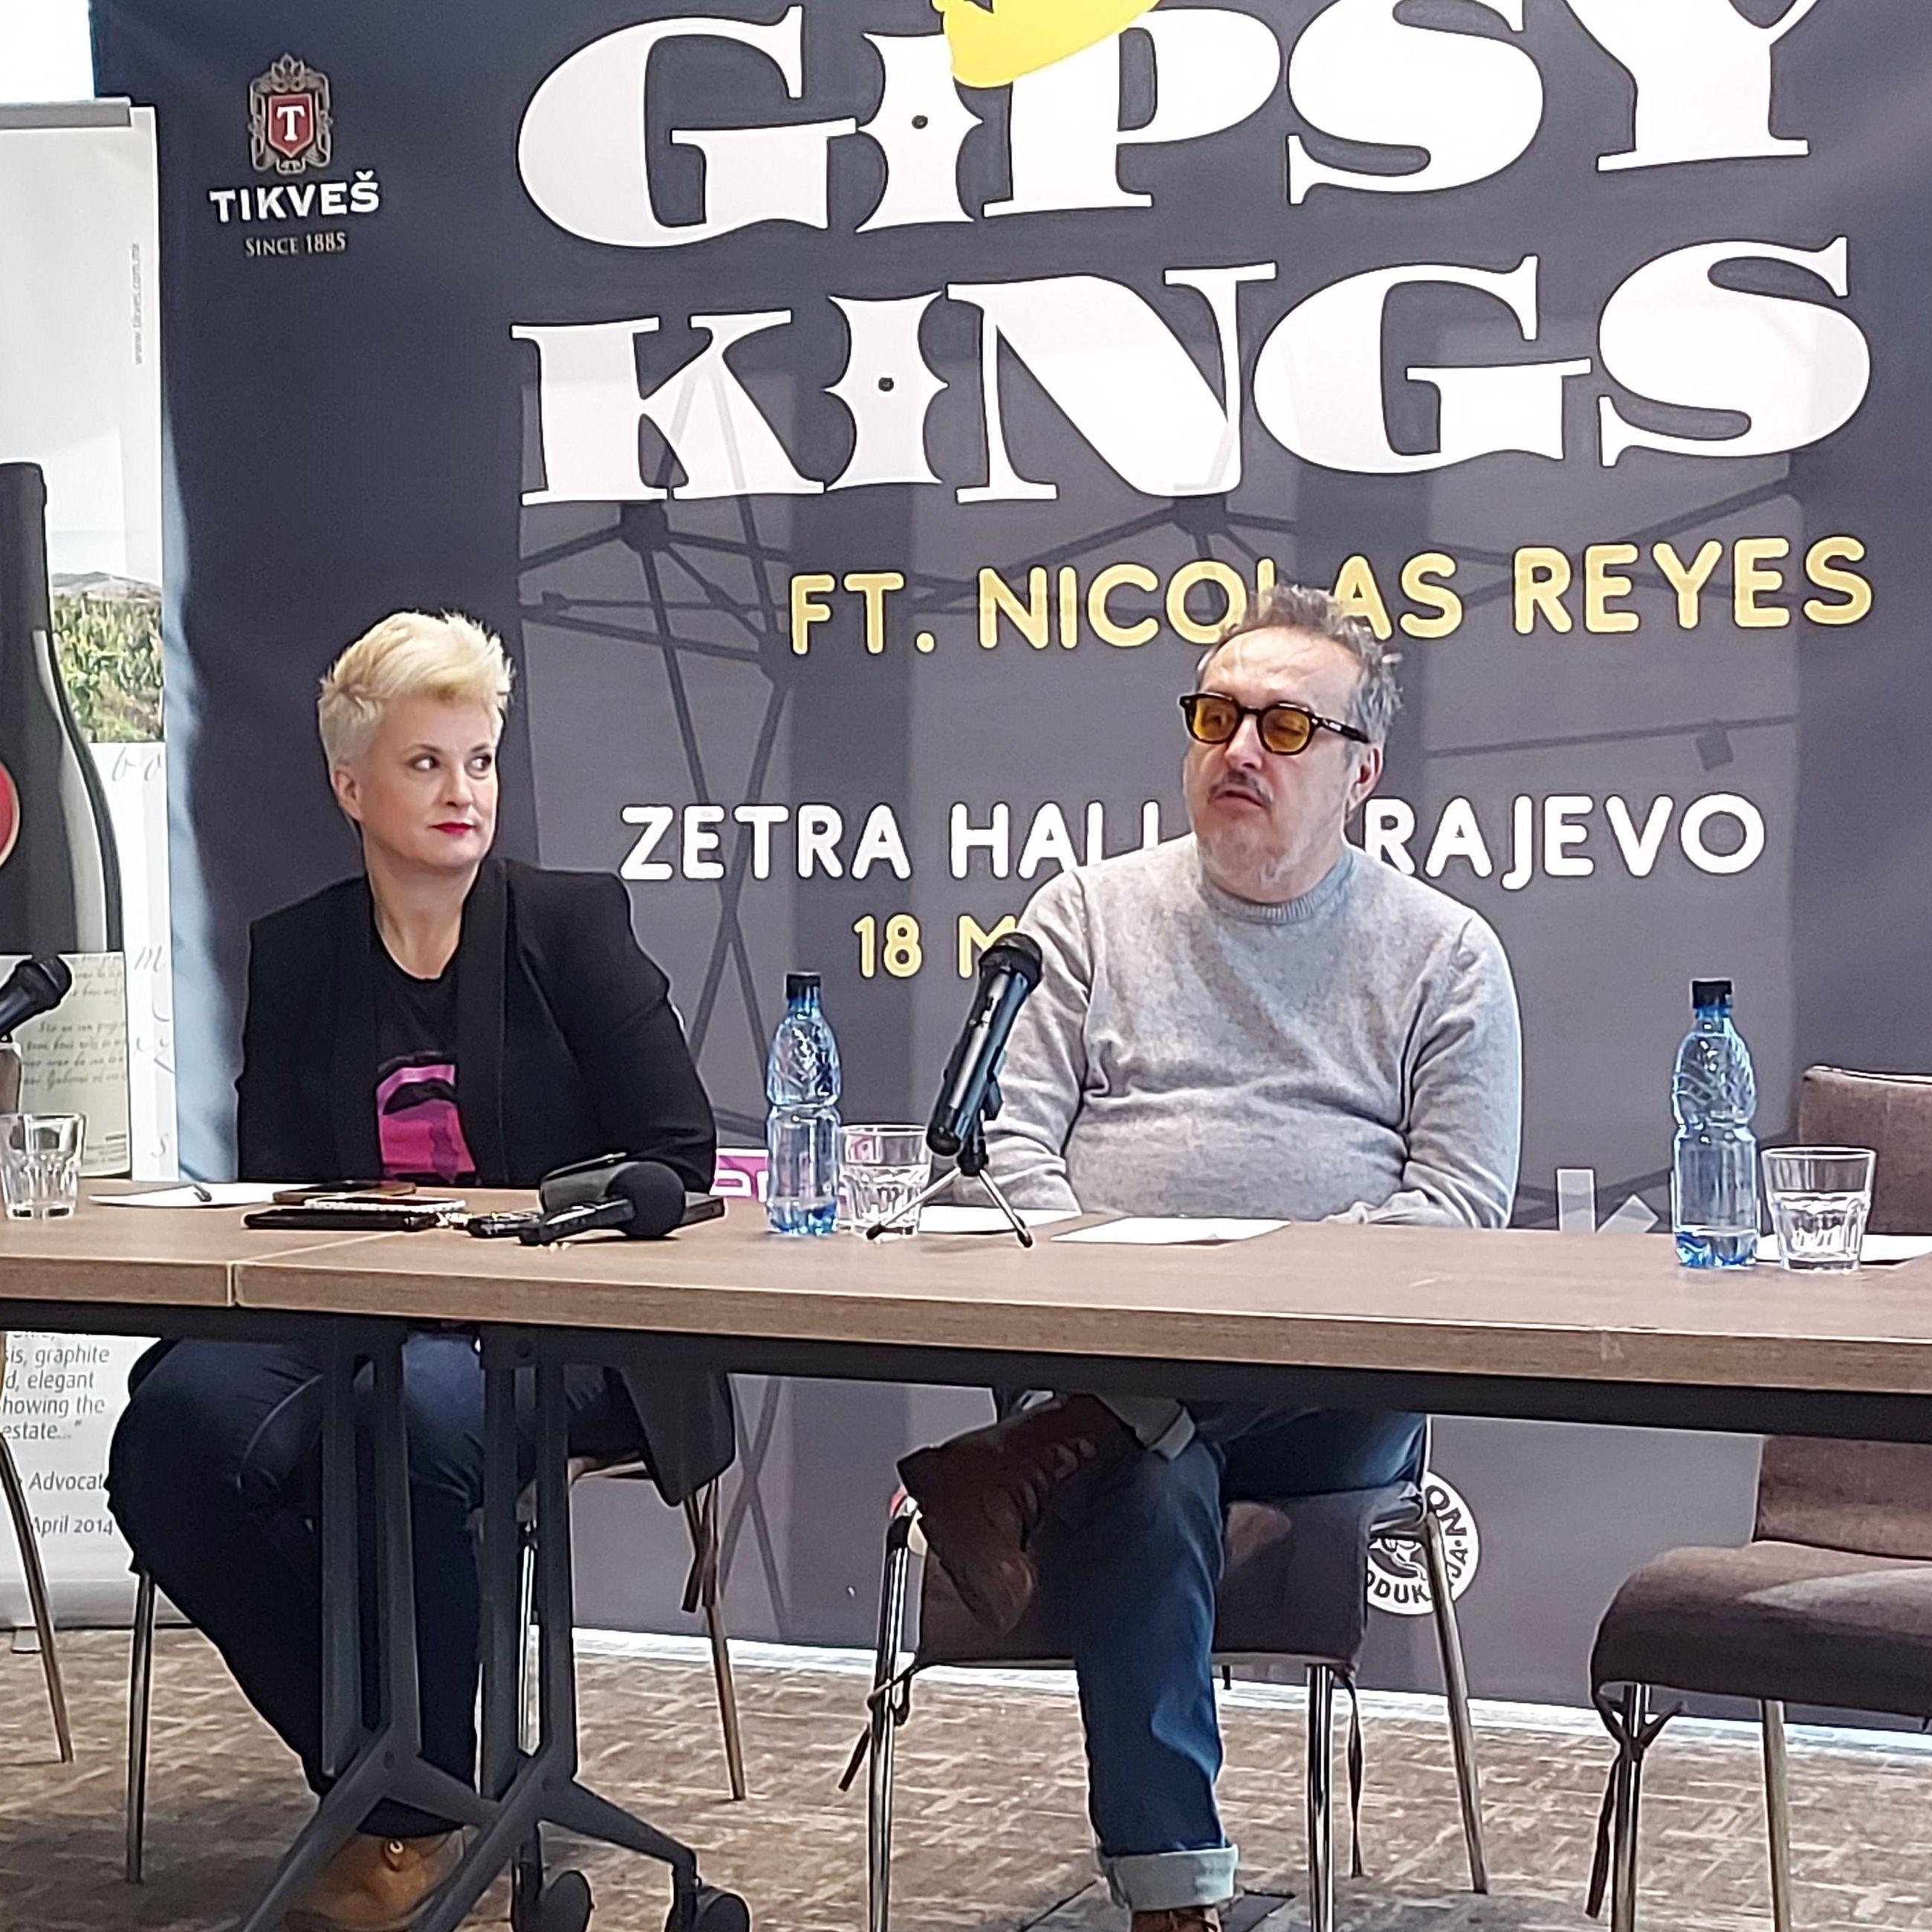 Koncert "Gipsy Kingsa" u Sarajevu: Prodato 20 posto ulaznica 